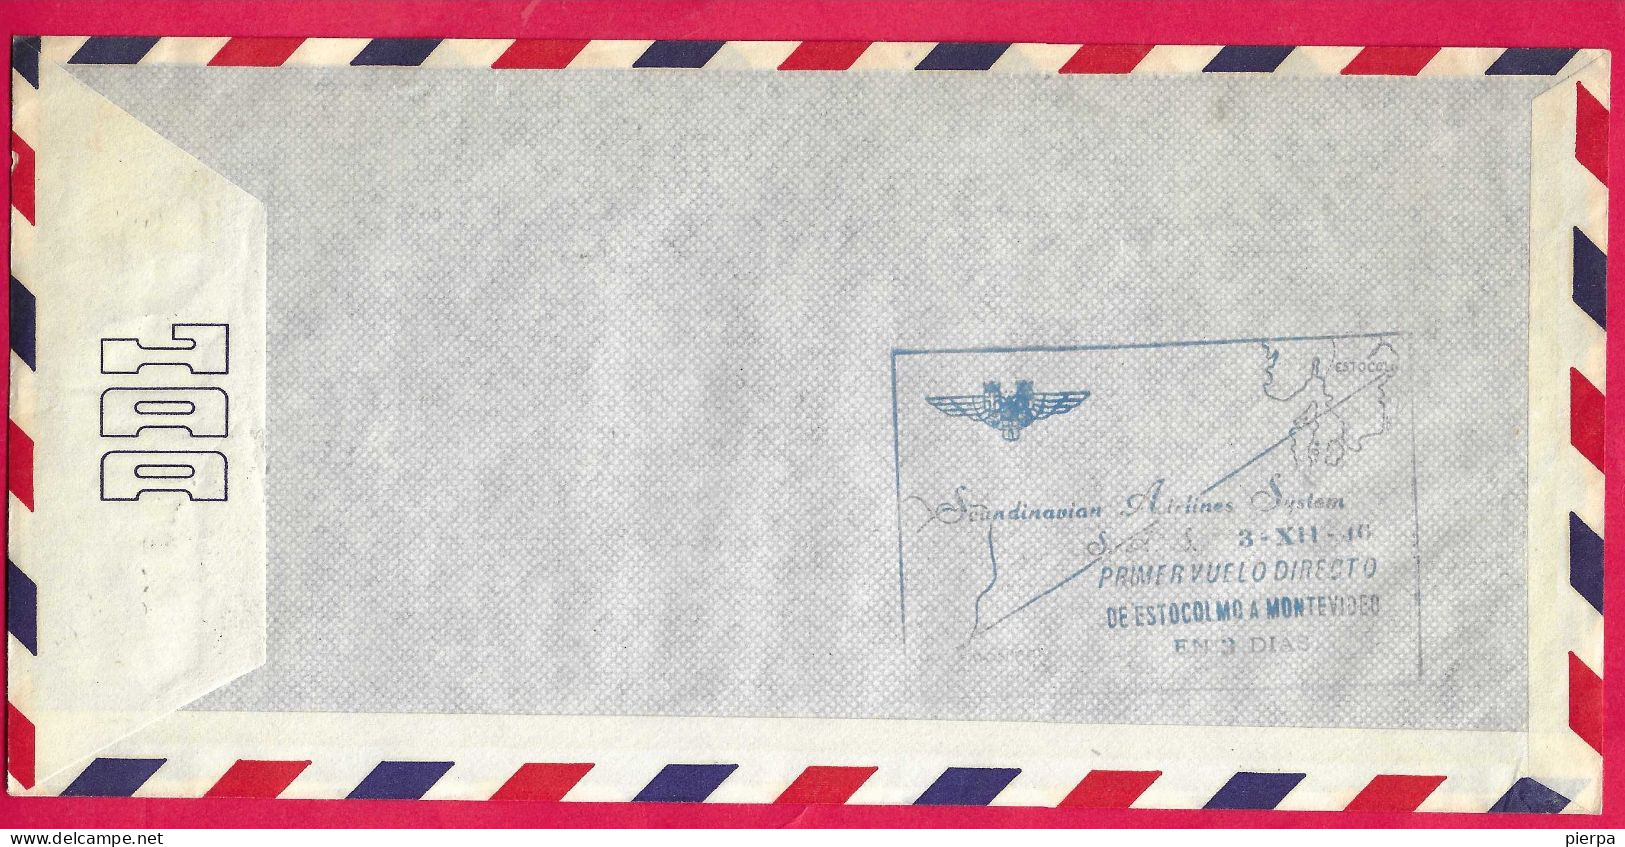 DANMARK - FIRST FLIGHT LUFTHAVN FROM KONEHAVN TO MONTEVIDEO * 30.11.1946* ON COMMERCIAL SIZE ENVELOPE - Posta Aerea